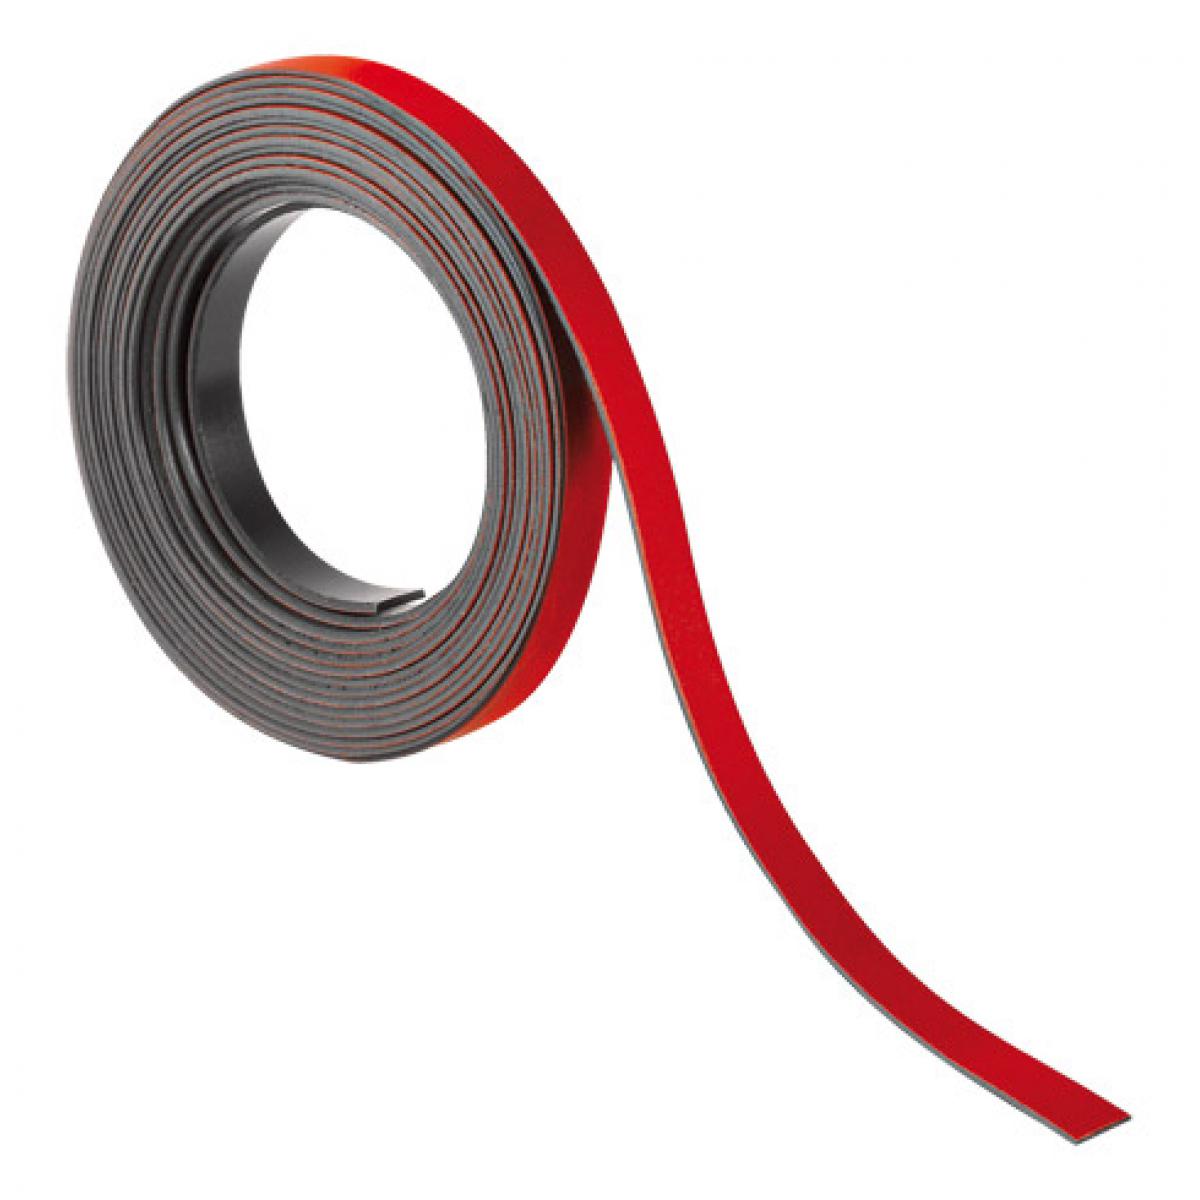 marque generique - Ruban magnétique 5 mm x 2 m rouge - Accessoires Bureau